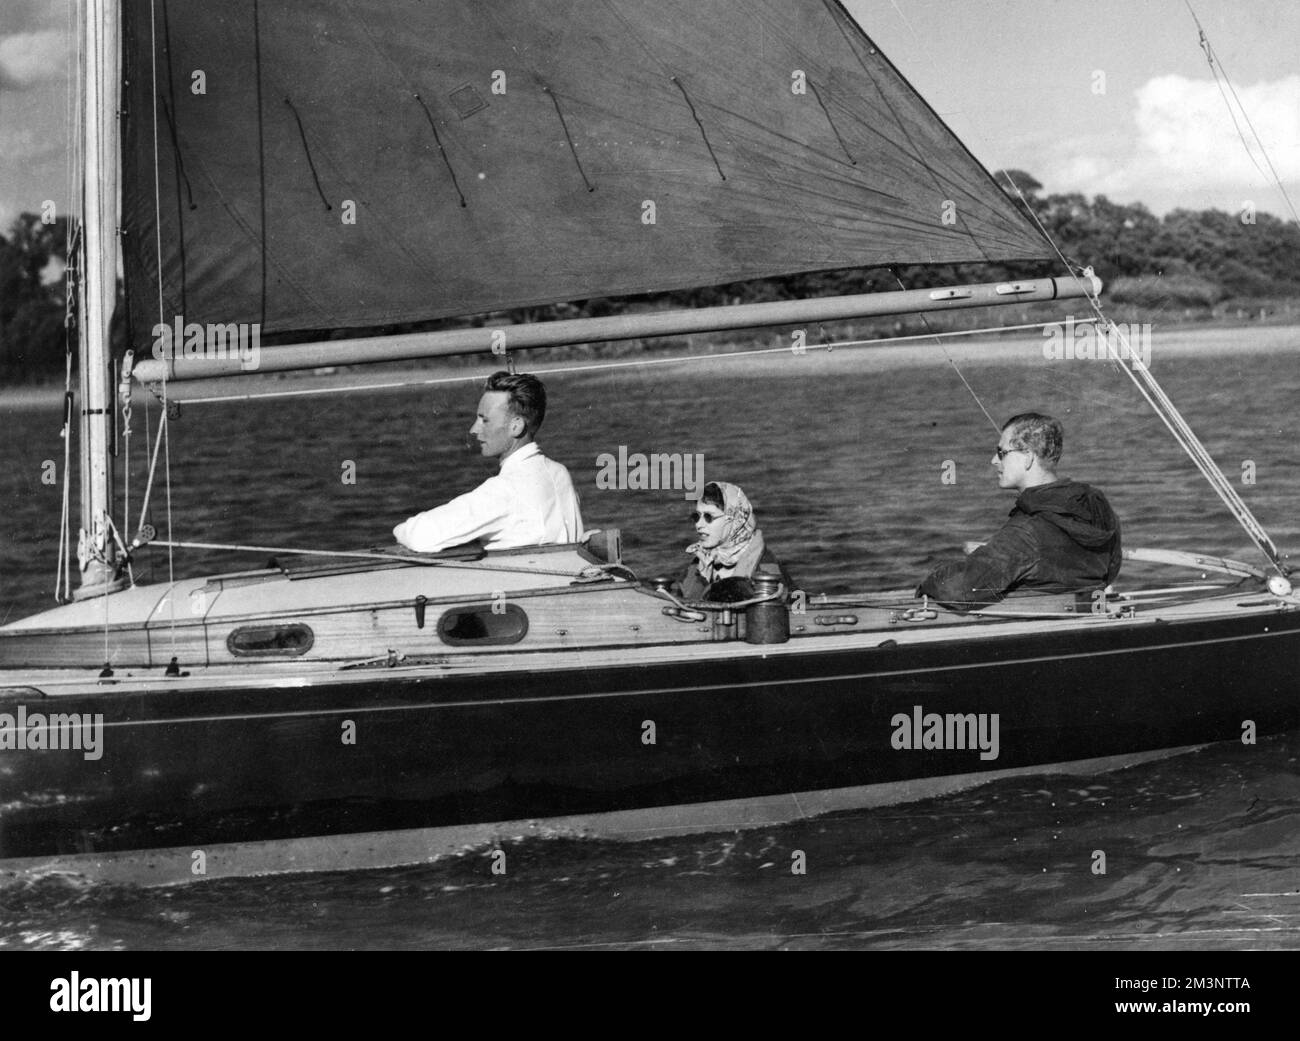 La reine Elizabeth II (alors que la princesse Elizabeth est toujours) regarde le prince Philip, duc d'Édimbourg à la barre de son yacht, Bluebottle, dans la rivière Beaulieu, en face de Cowes. Date: 1949 Banque D'Images